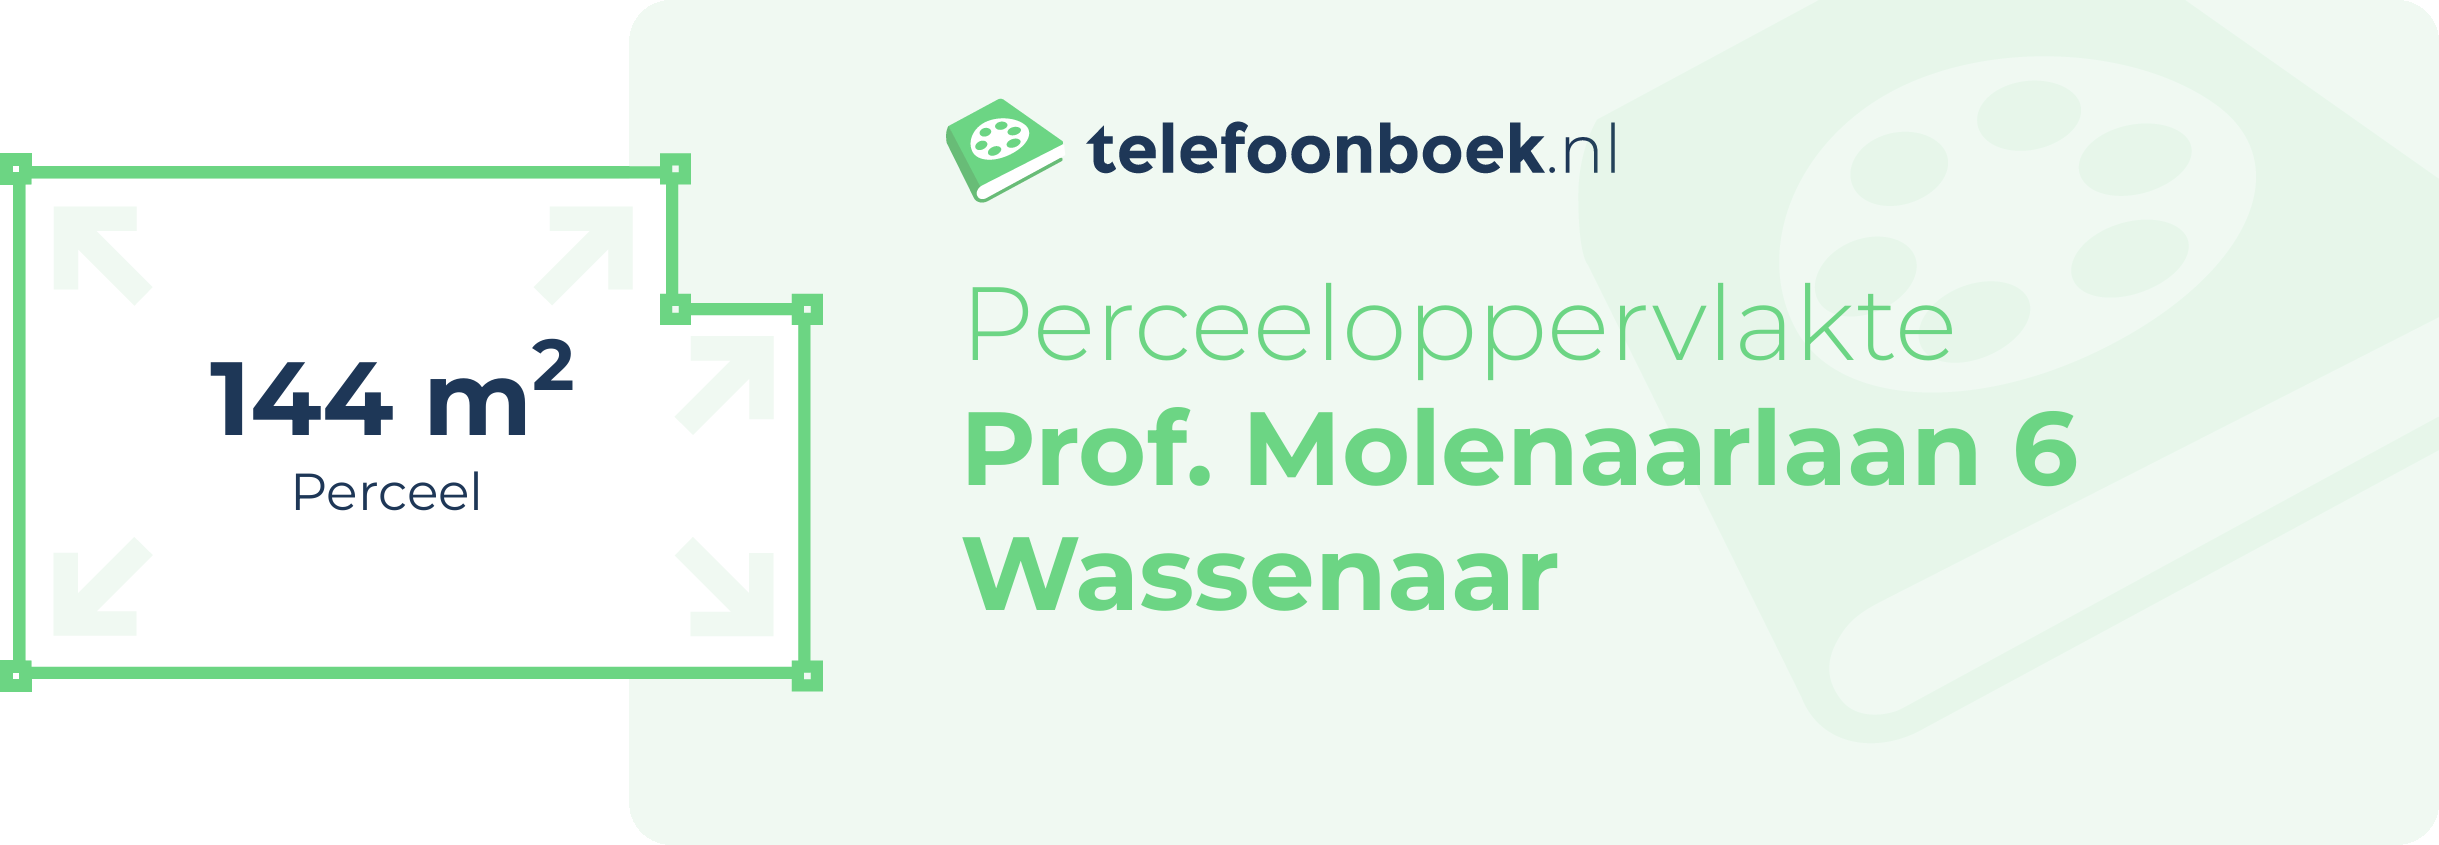 Perceeloppervlakte Prof. Molenaarlaan 6 Wassenaar